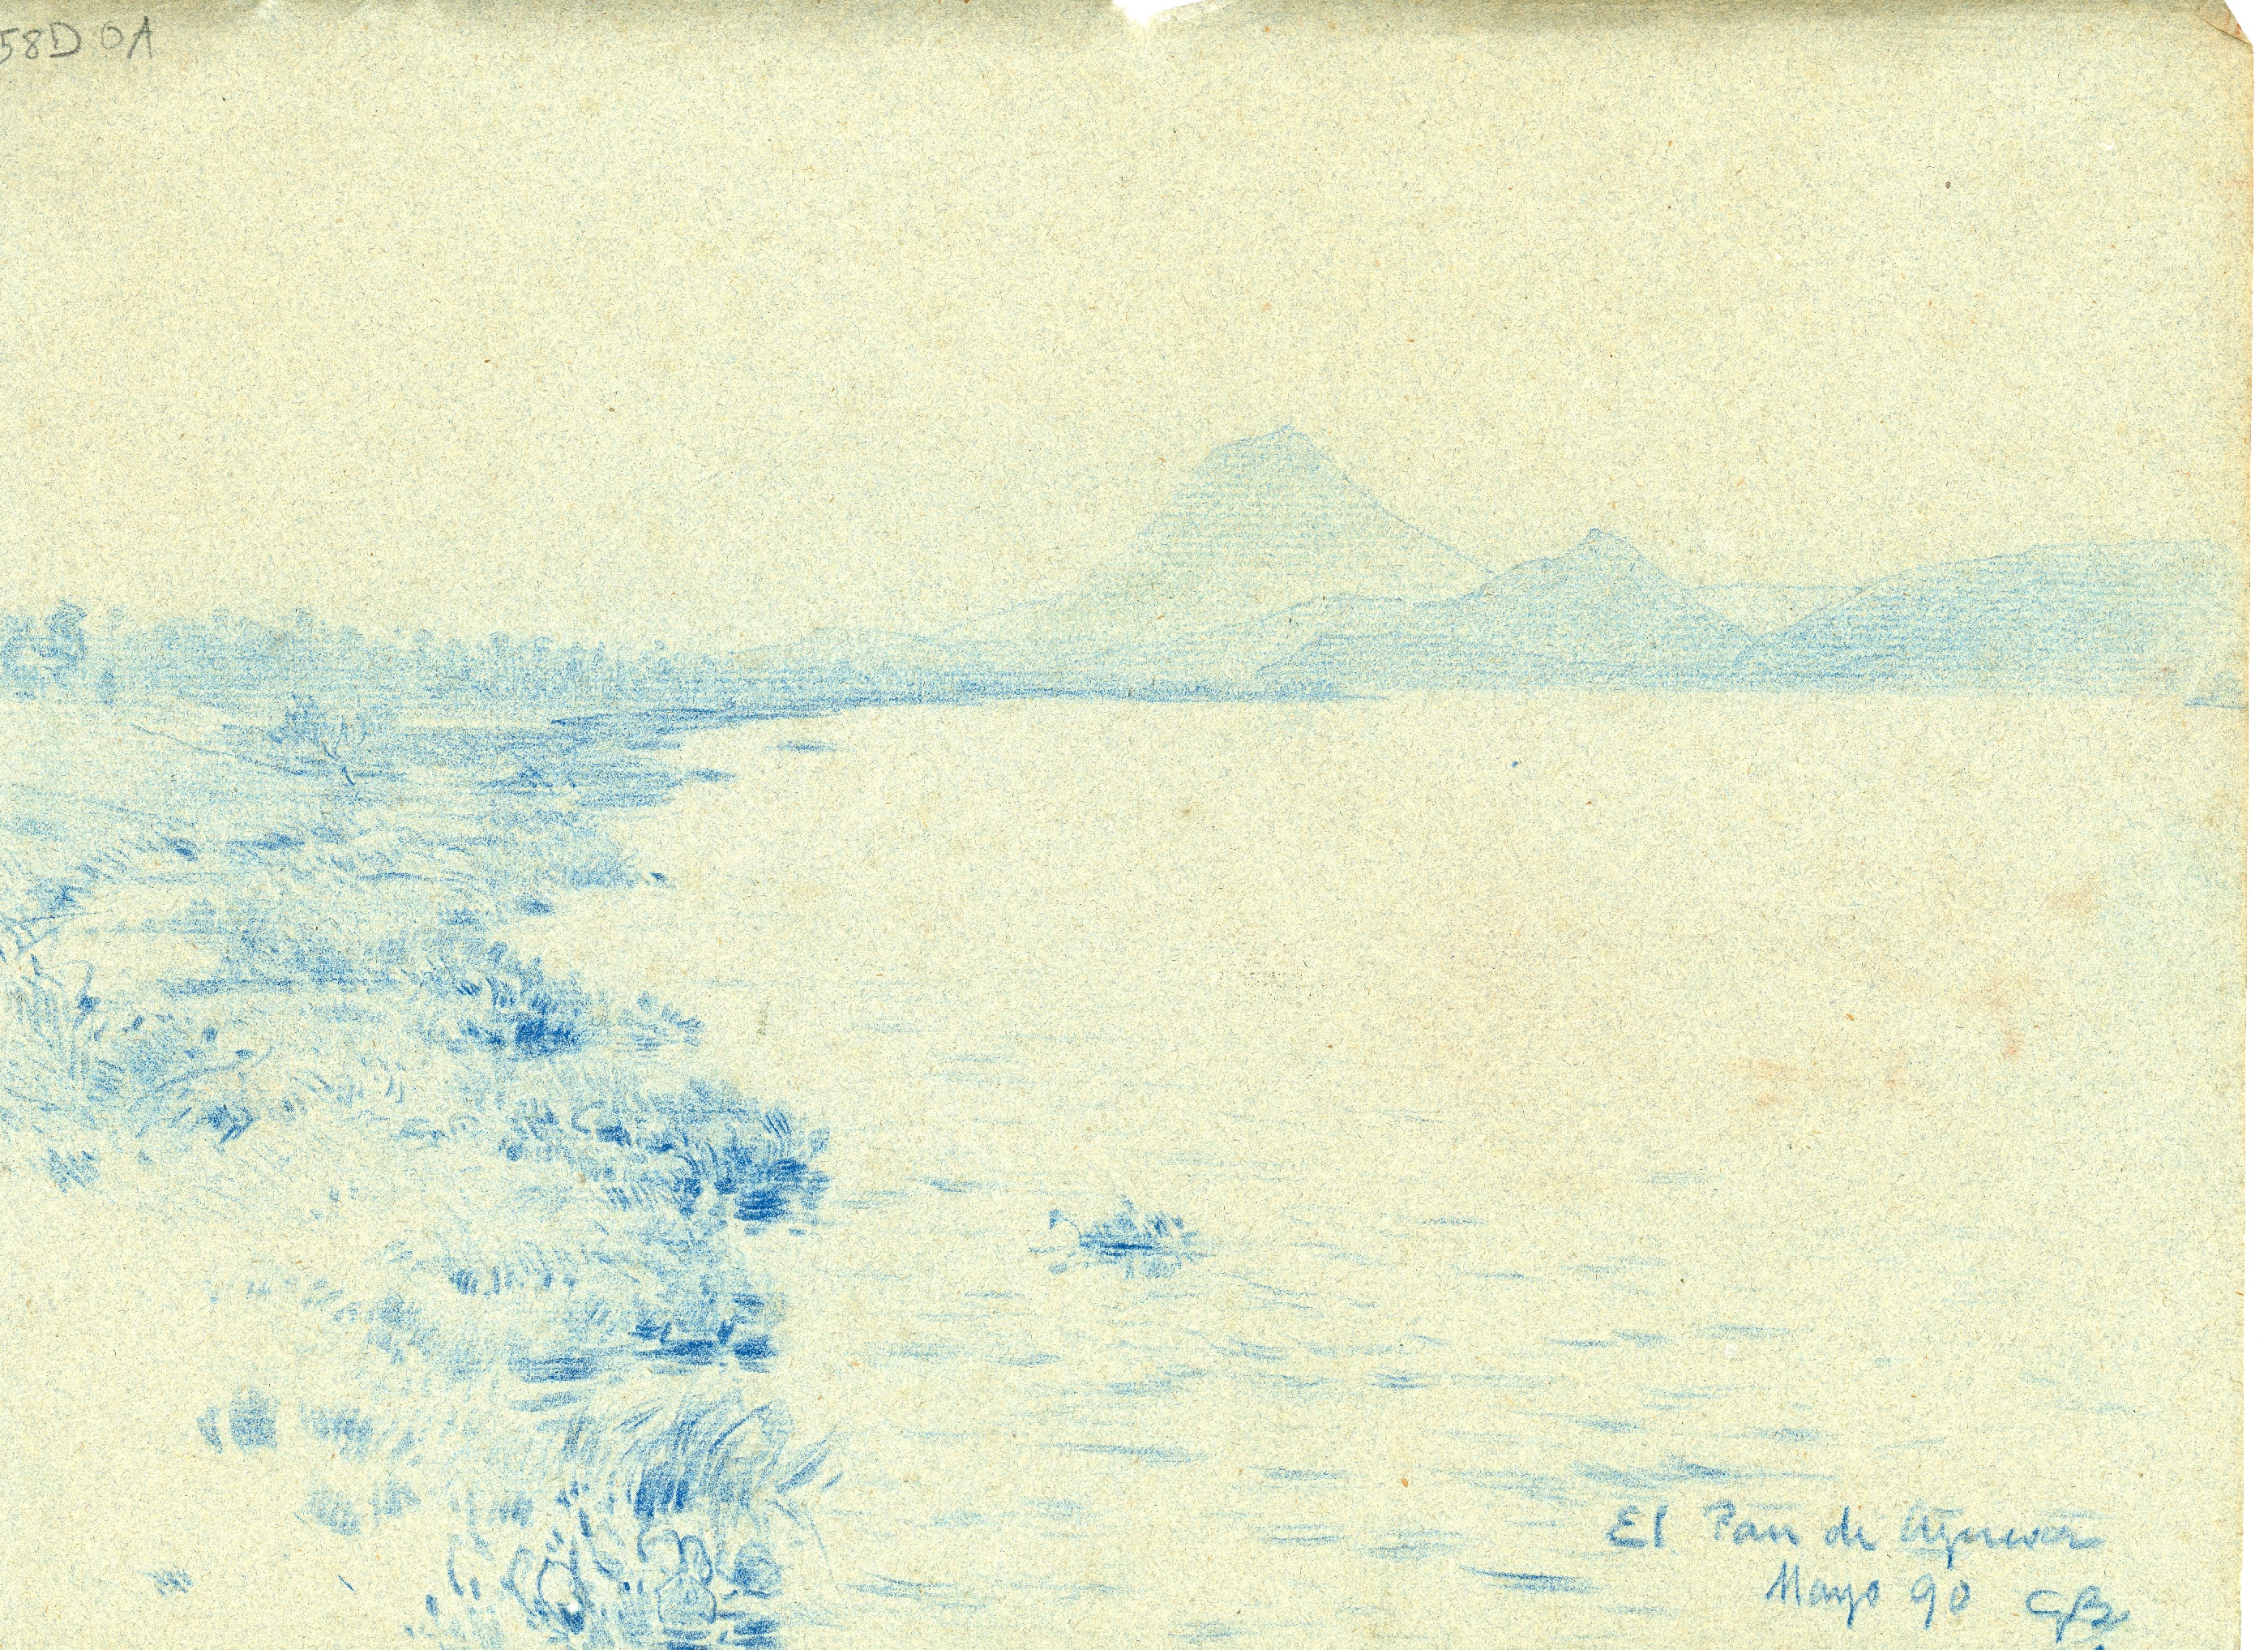 El Pan de Azucar, paesaggio (disegno) di Boggiani, Guido - ambito Italia settentrionale (seconda metà XX)